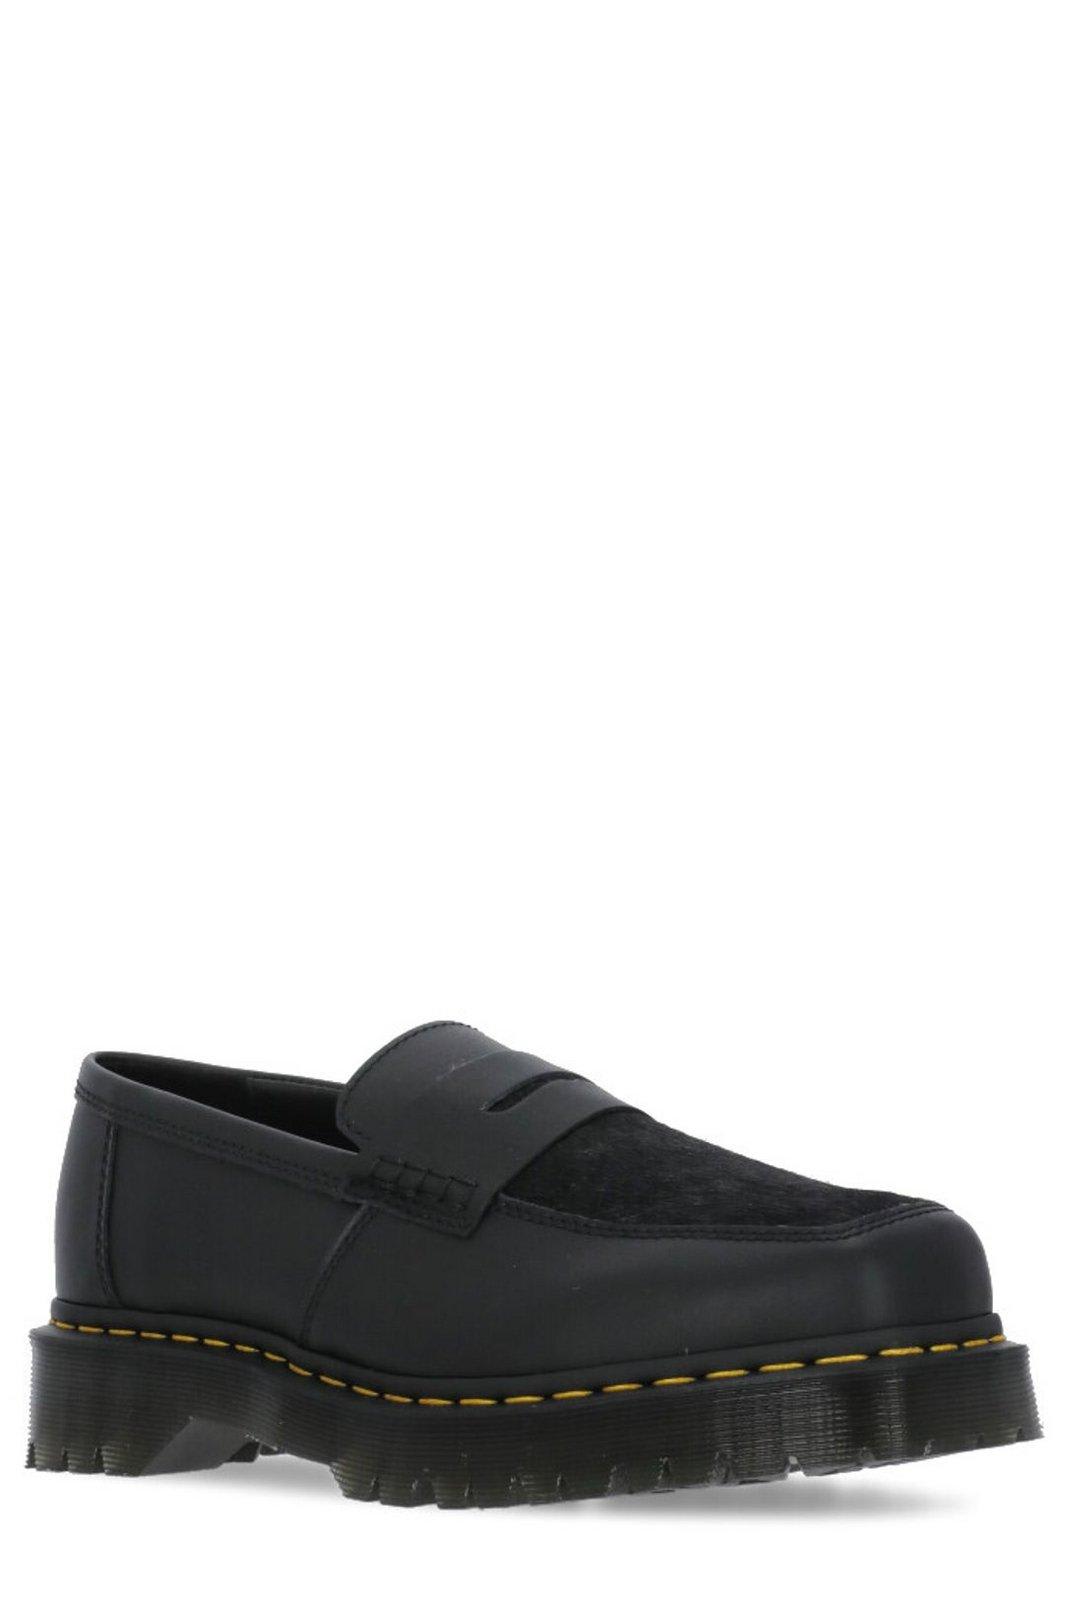 Shop Dr. Martens' Square-toe Slip-on Loafers In Black